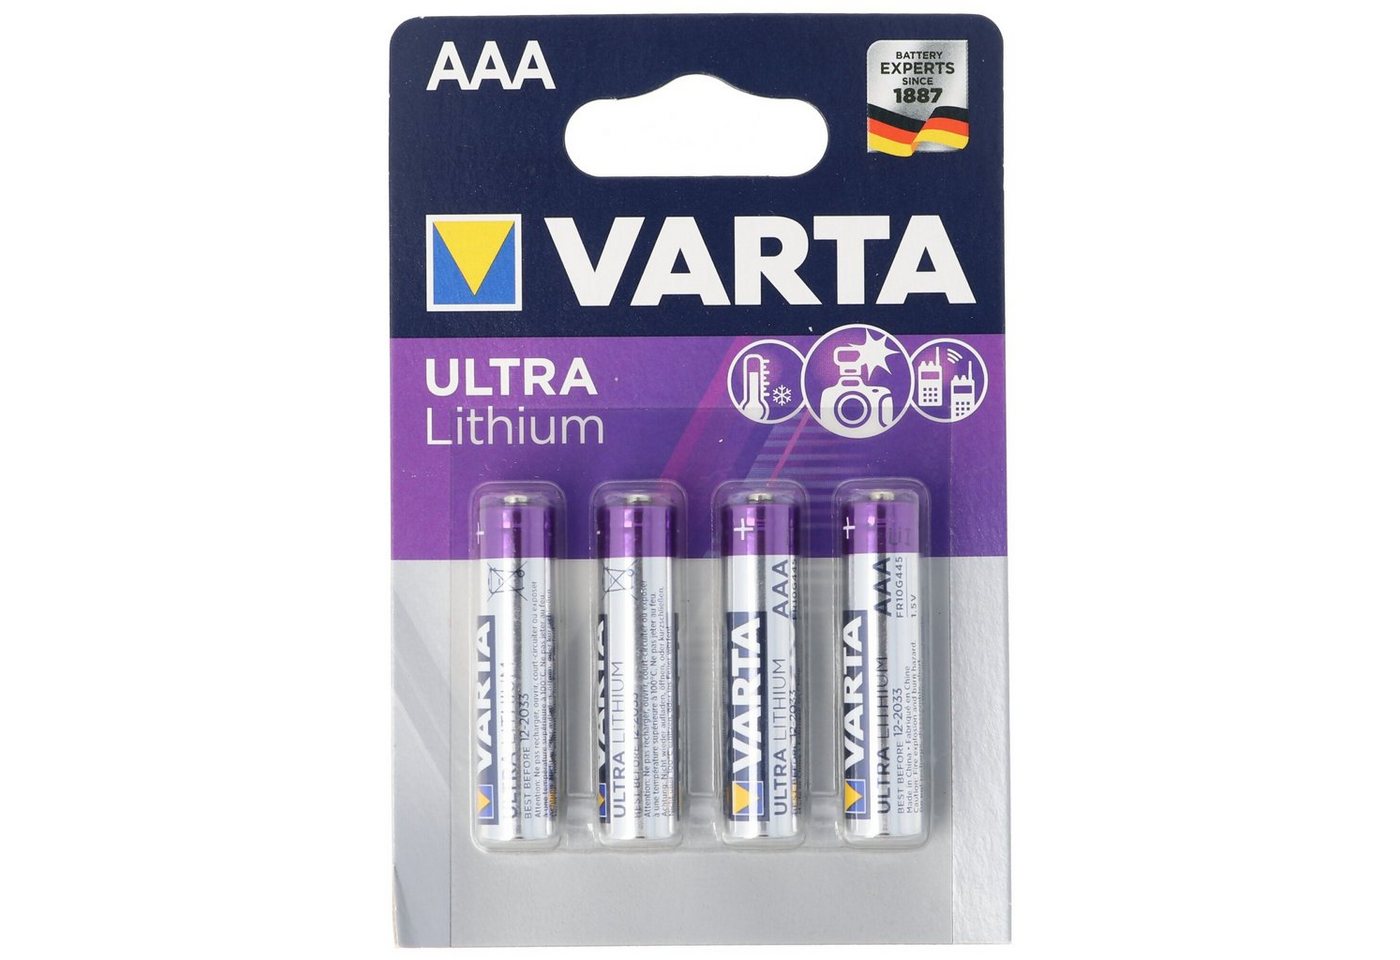 VARTA Varta Lithium Batterie AAA, Micro, FR03, 6103, Varta Ultra Lithium, 1 Batterie von VARTA